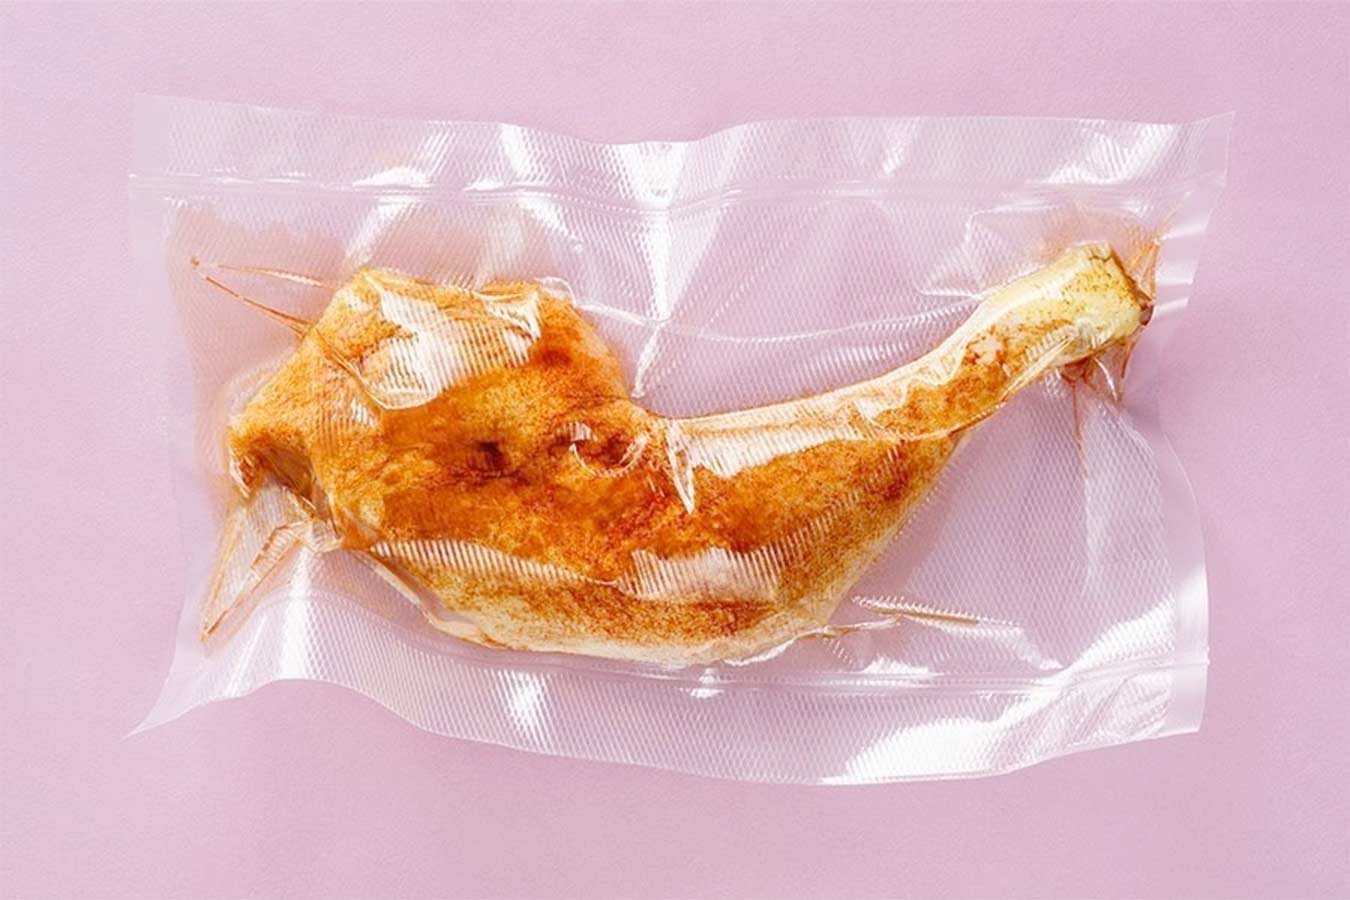 poulet emballé sous vide et durée de conservation